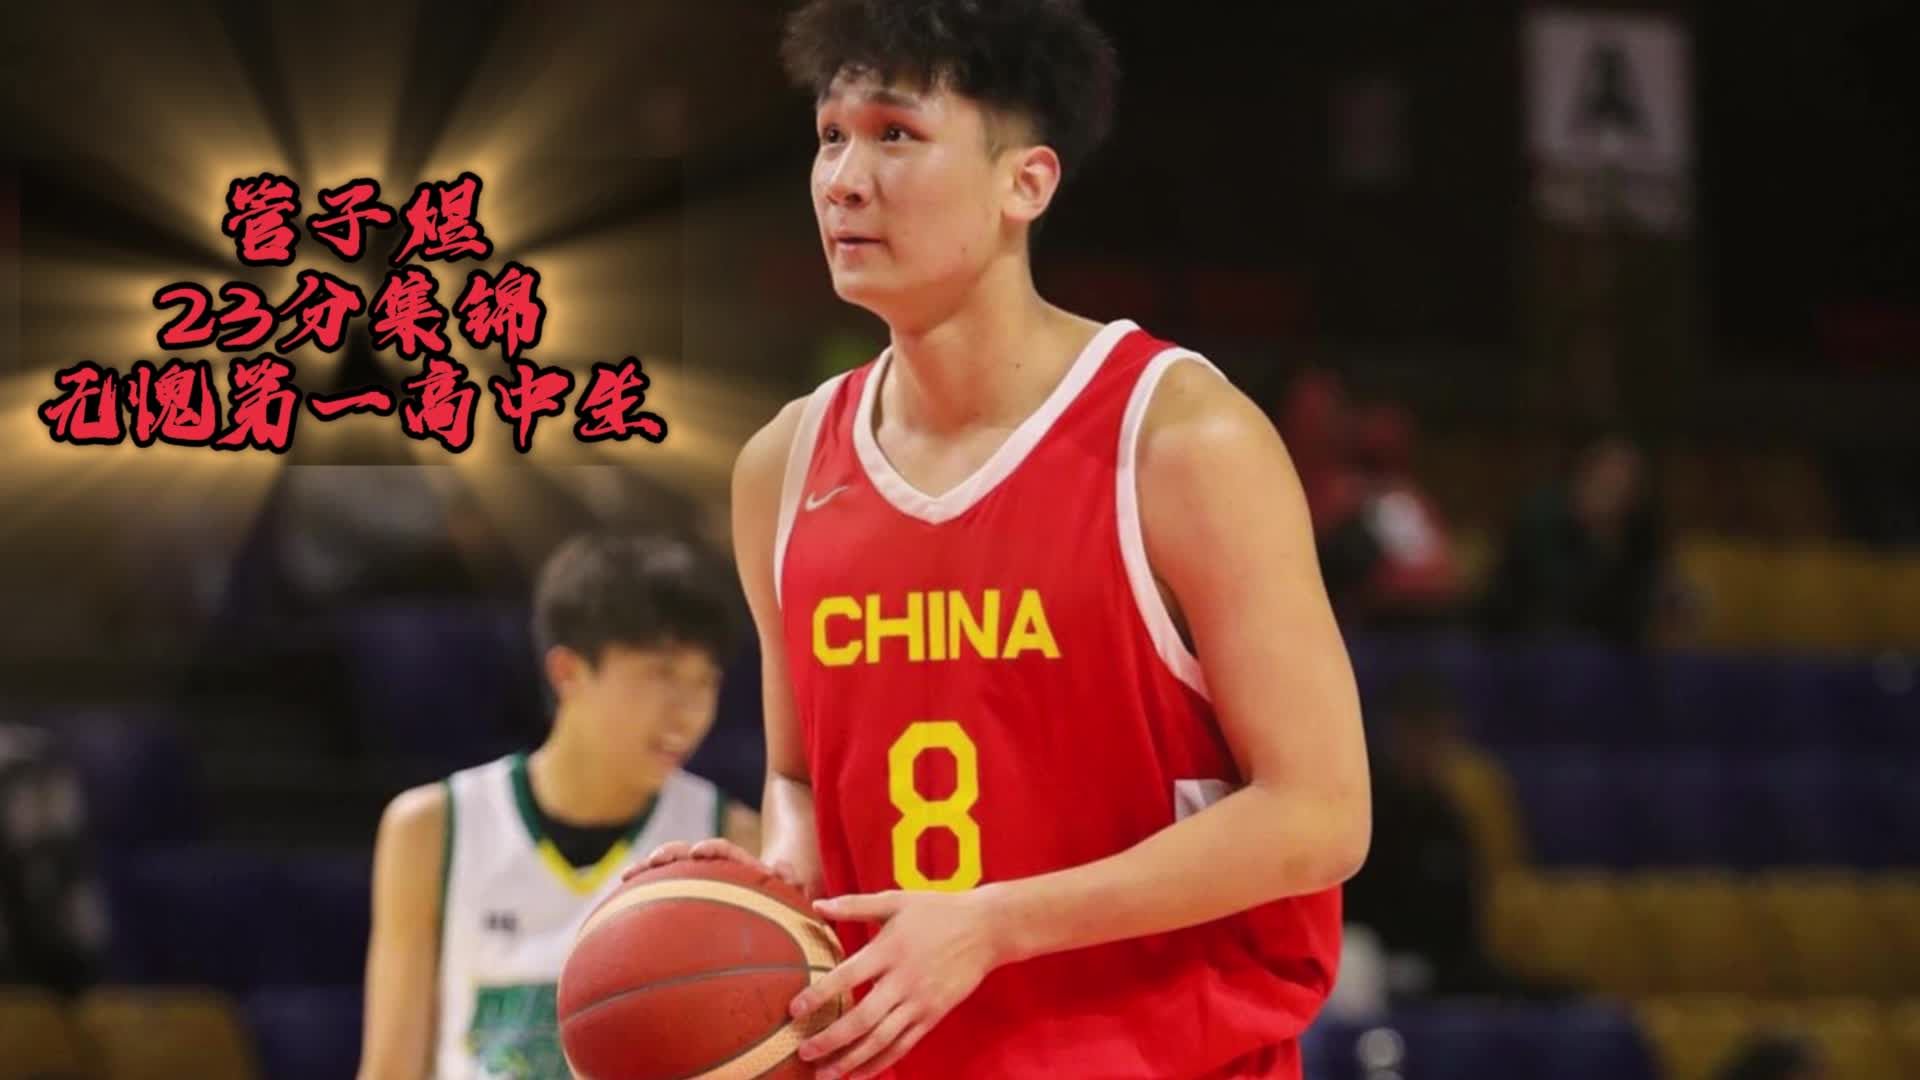 如何评价中国男篮（红队）在2018年雅加达亚运会上夺得冠军？ - 知乎